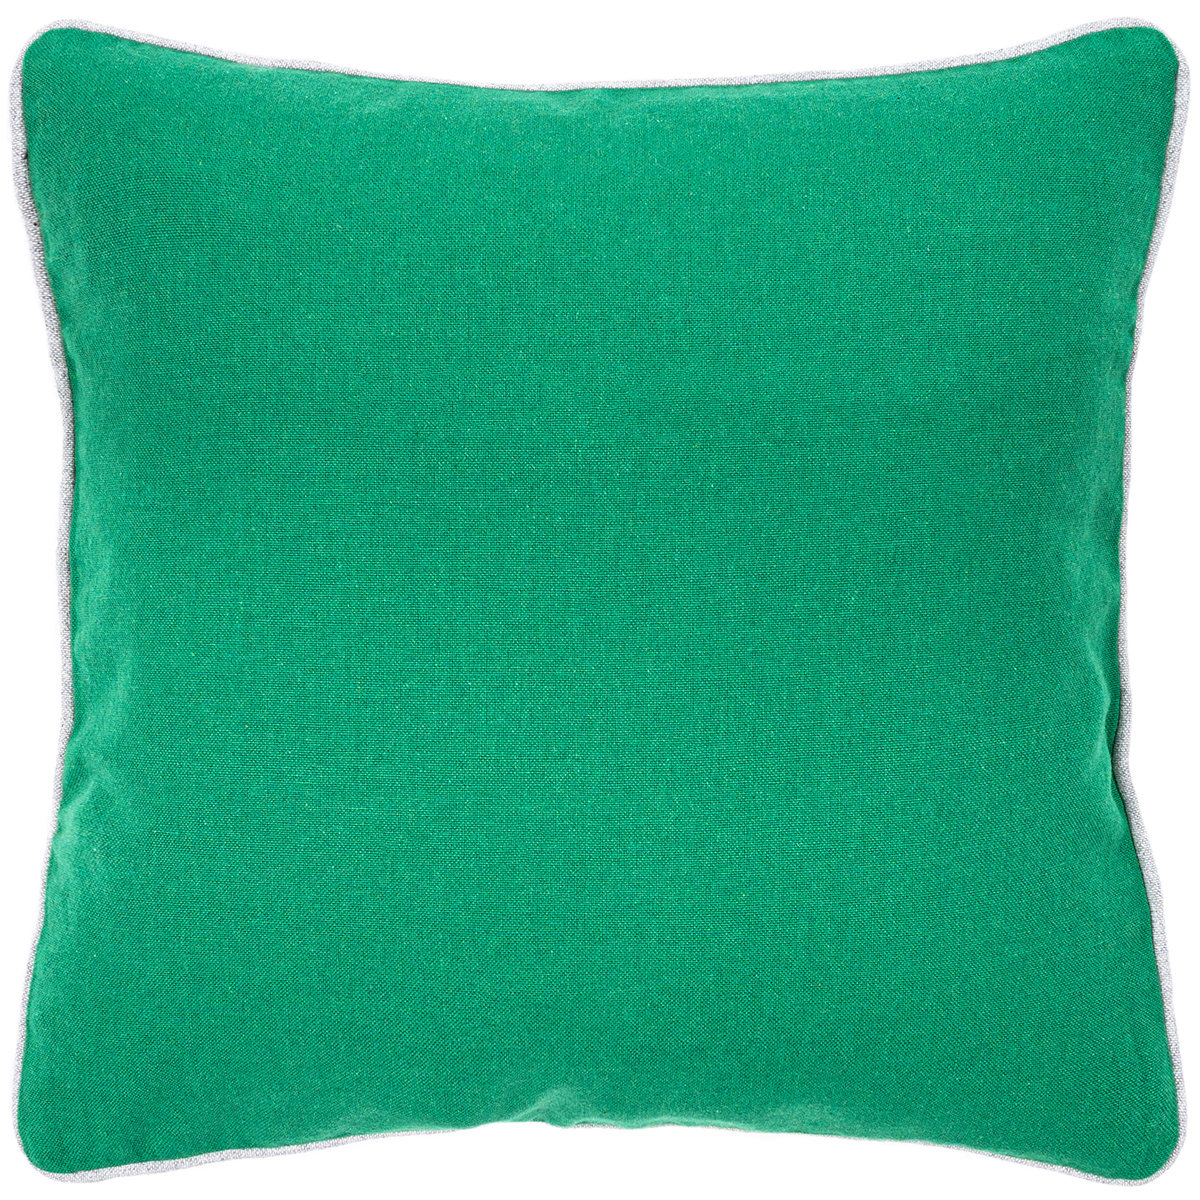 Trade Concept Povlak na polštářek Heda zelená, 40 x 40 cm